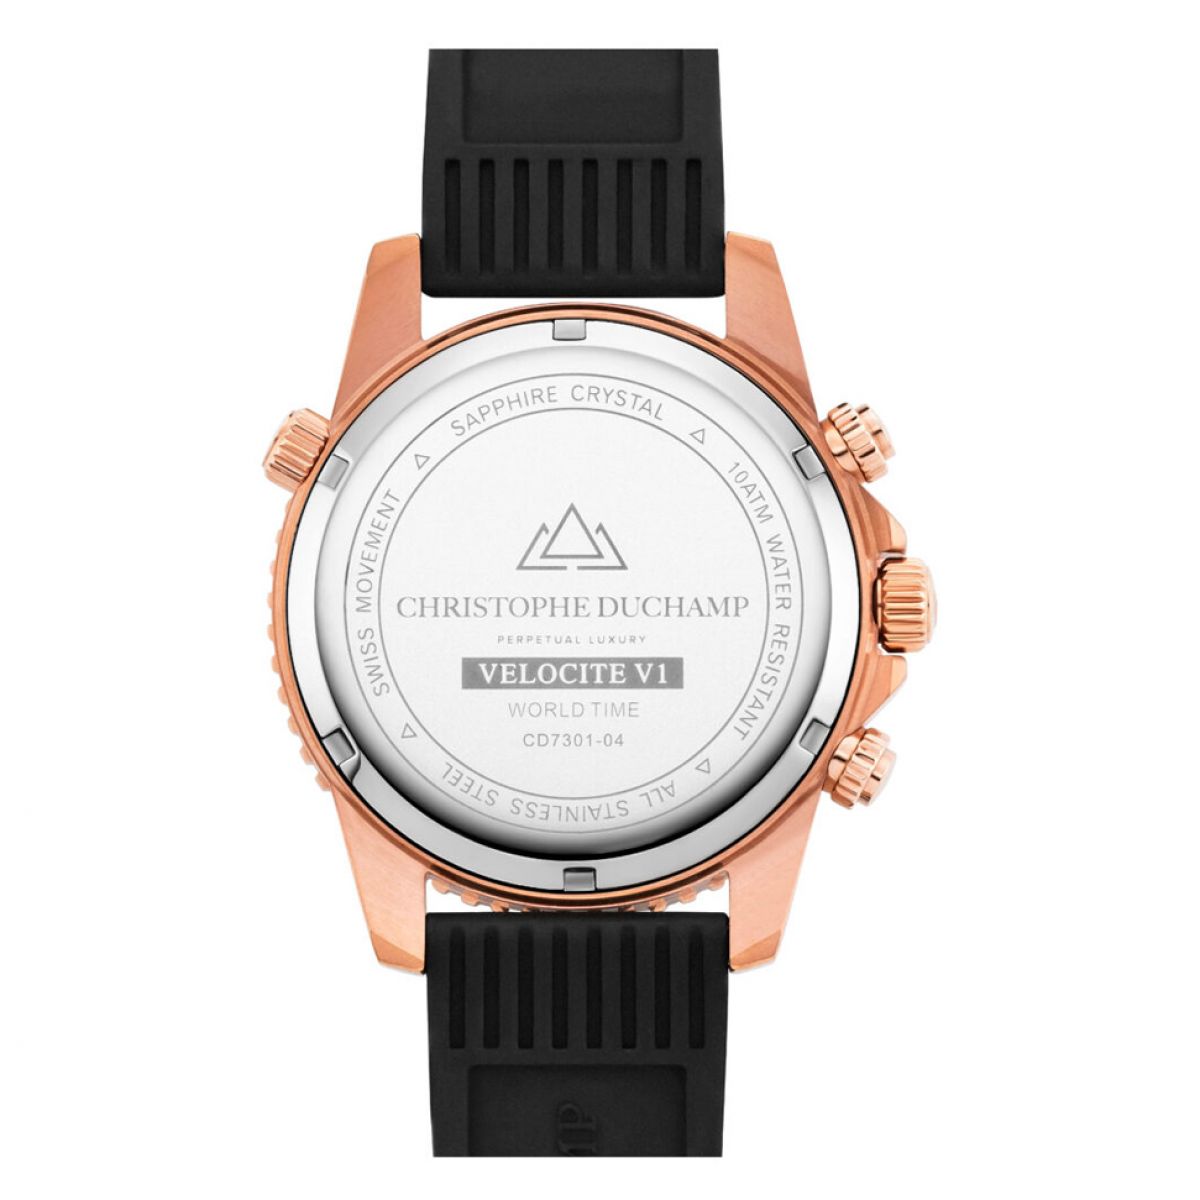 Christophe Duchamp Velocite Heren Horloge 48mm CD7301-04